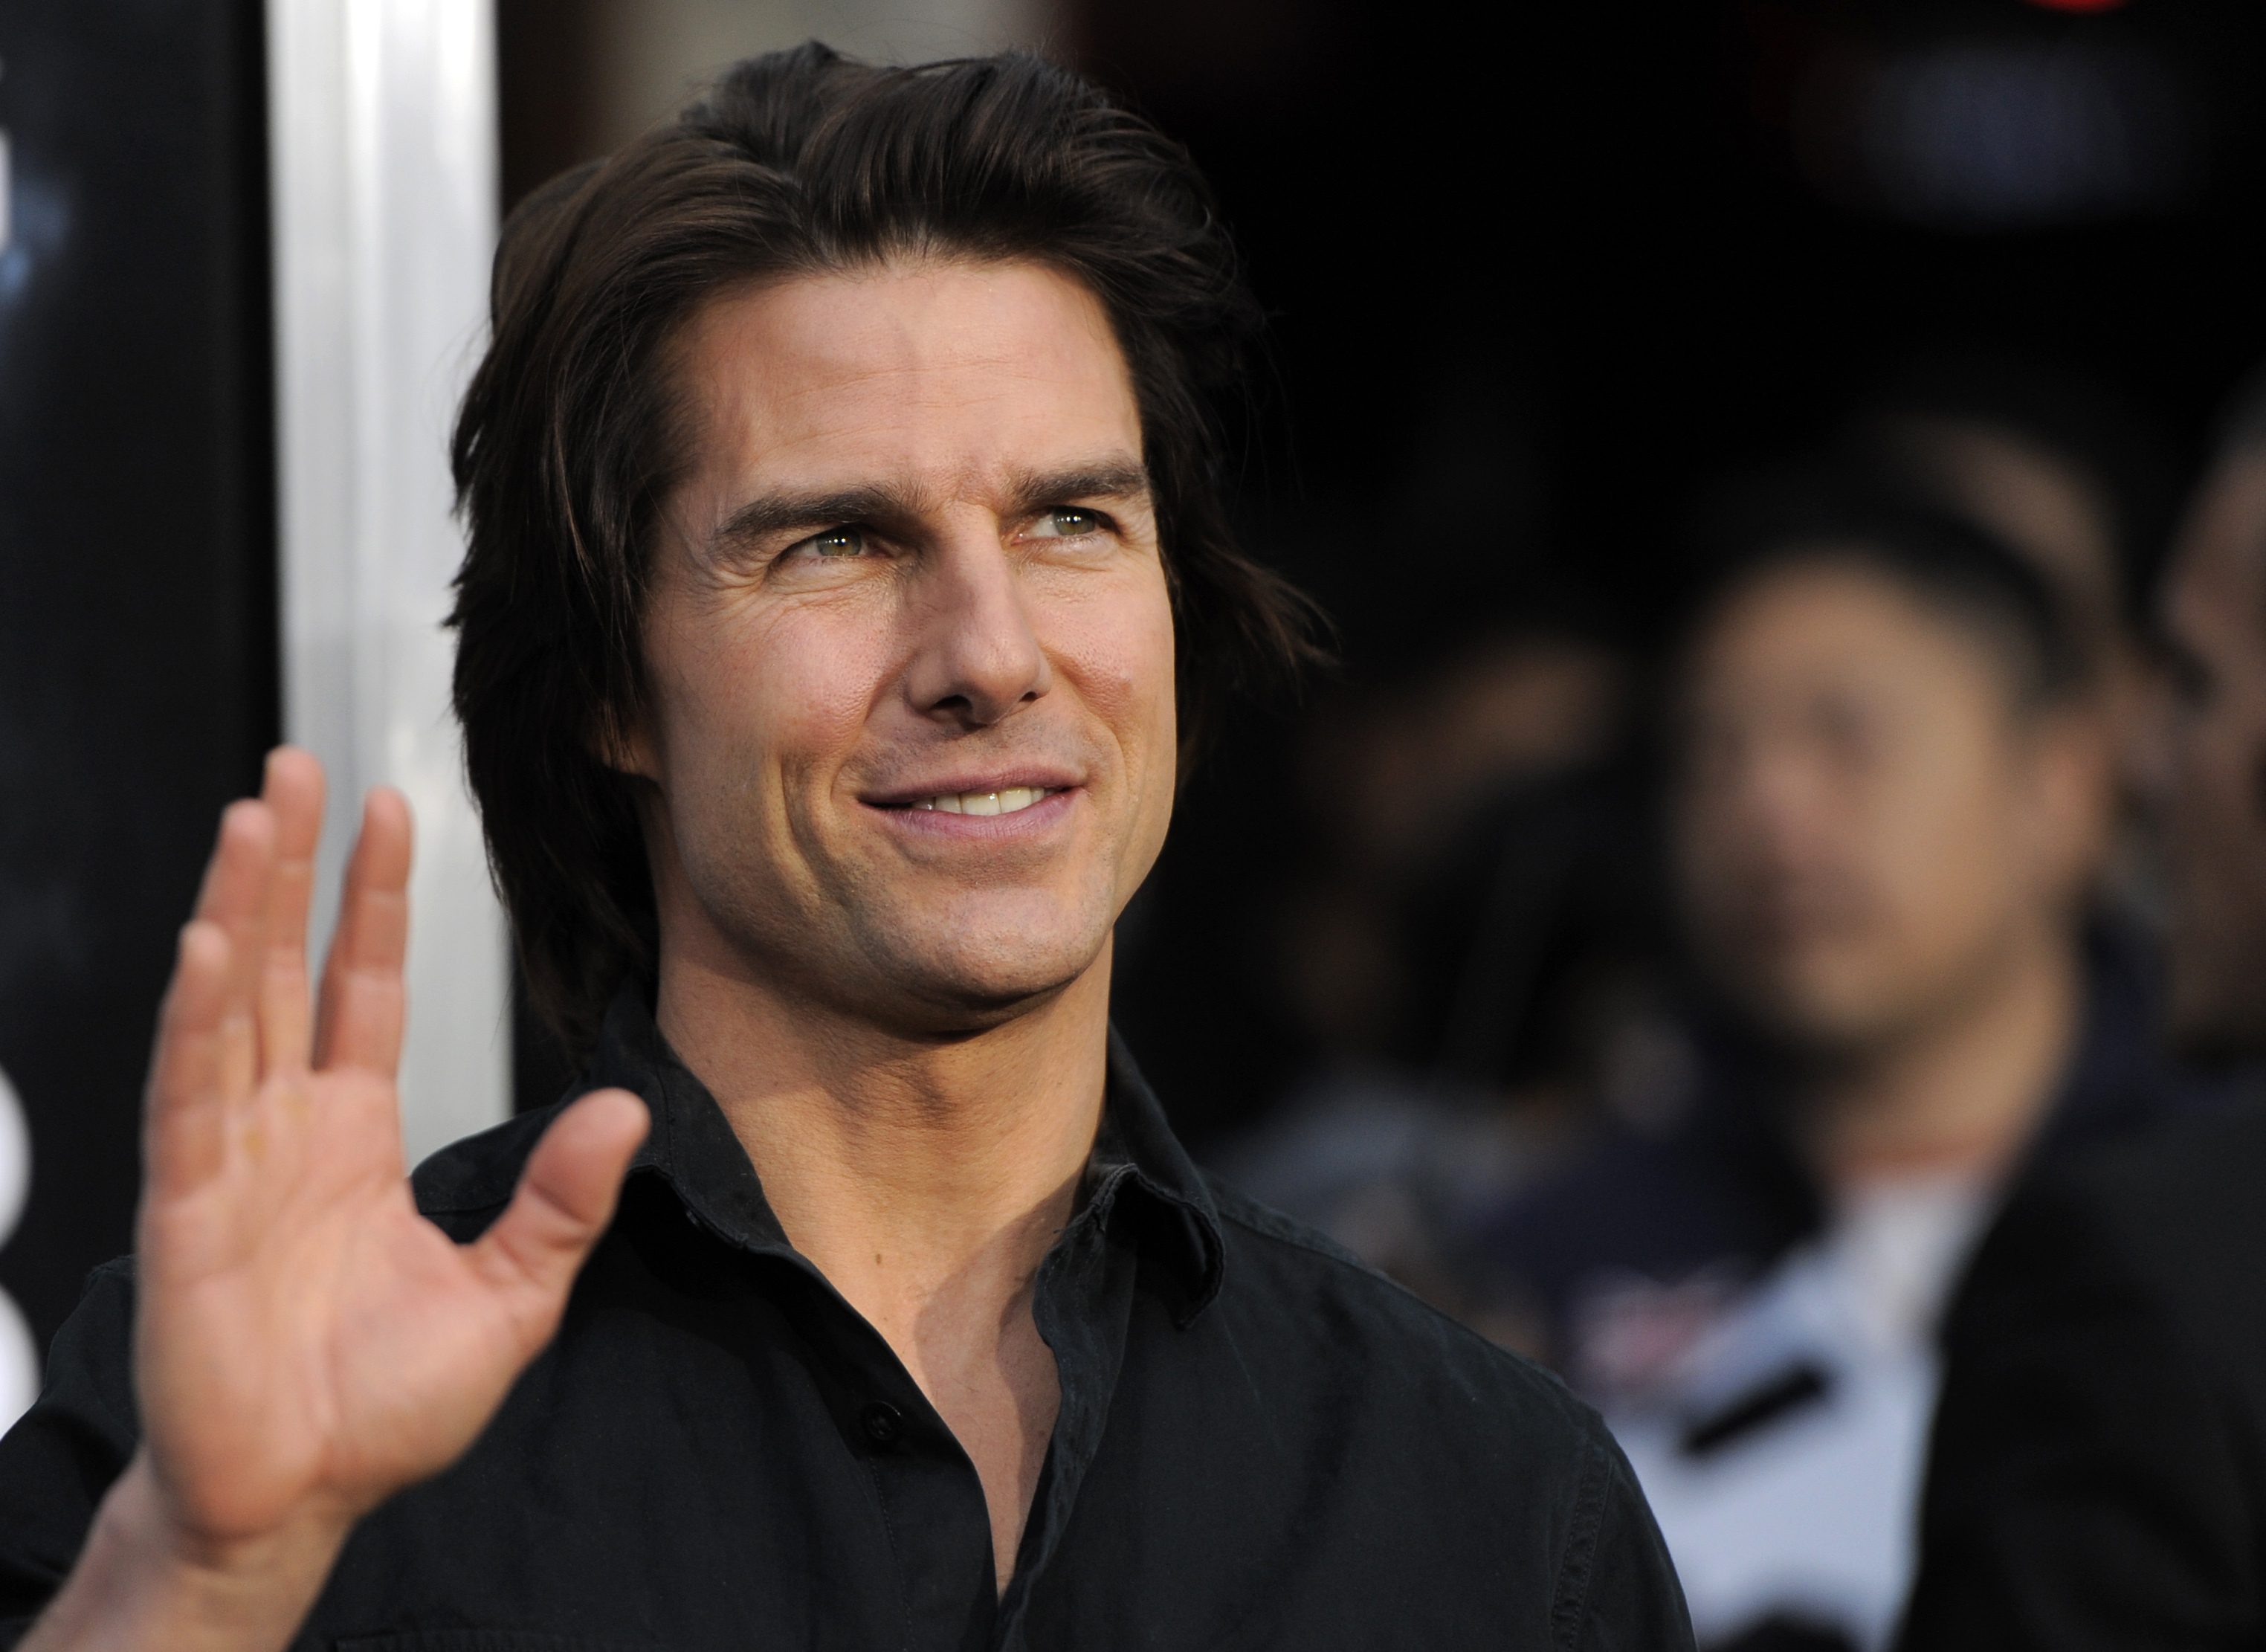 I Minority Report spelar Tom Cruise polisen John Anderton. Hans verklighet börjar bli allt mer lik vår.